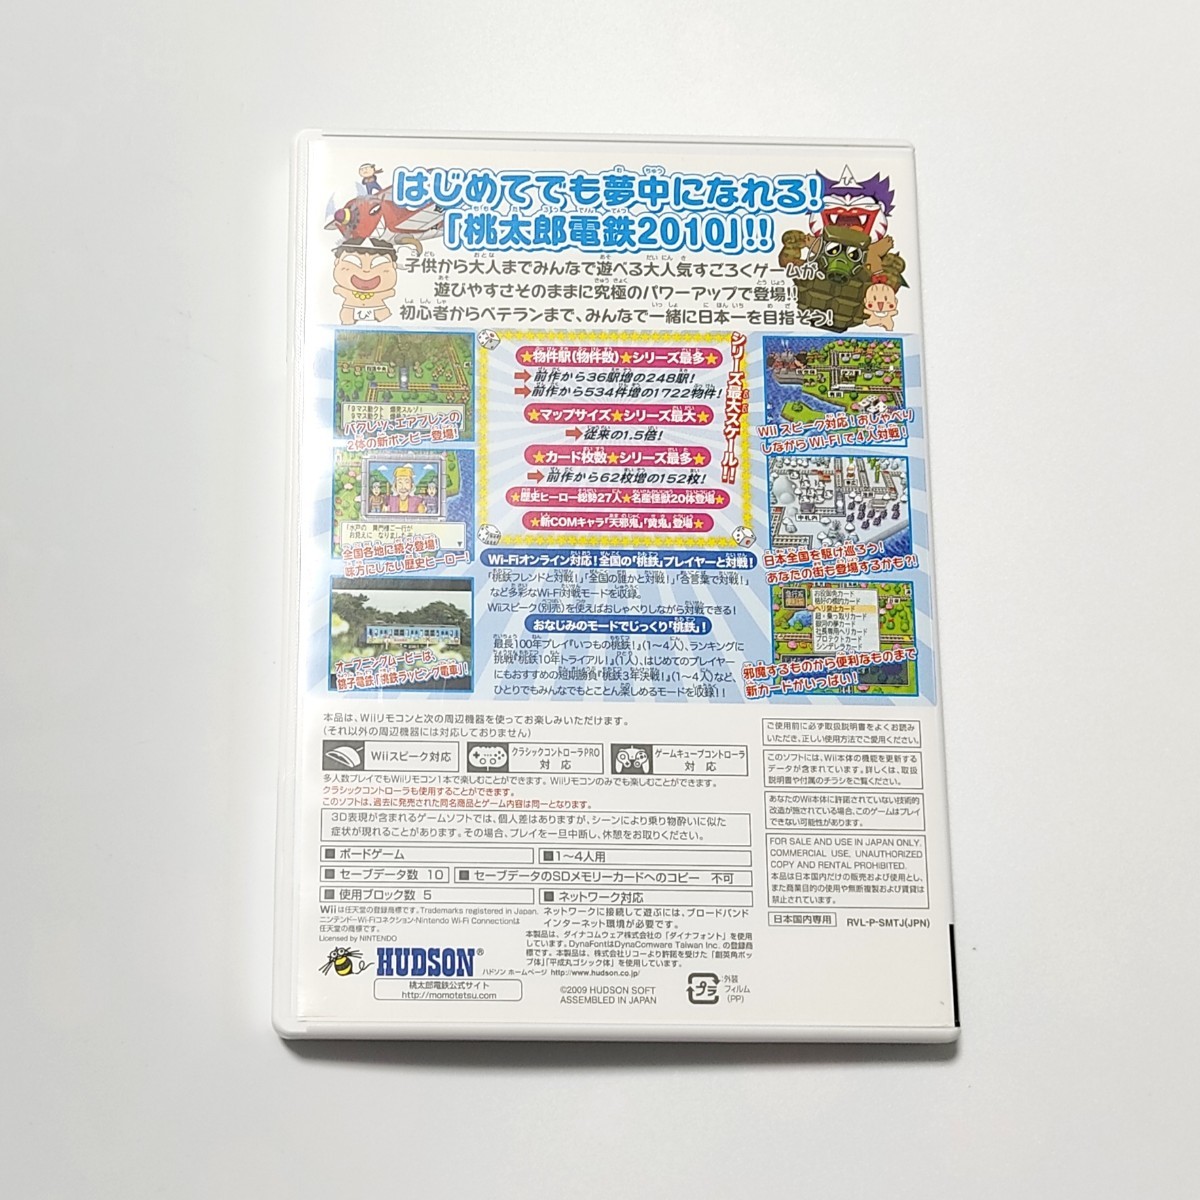 桃太郎電鉄2010 戦国・維新のヒーロー大集合!の巻 wii  Wiiソフト ももてつ 桃鉄 